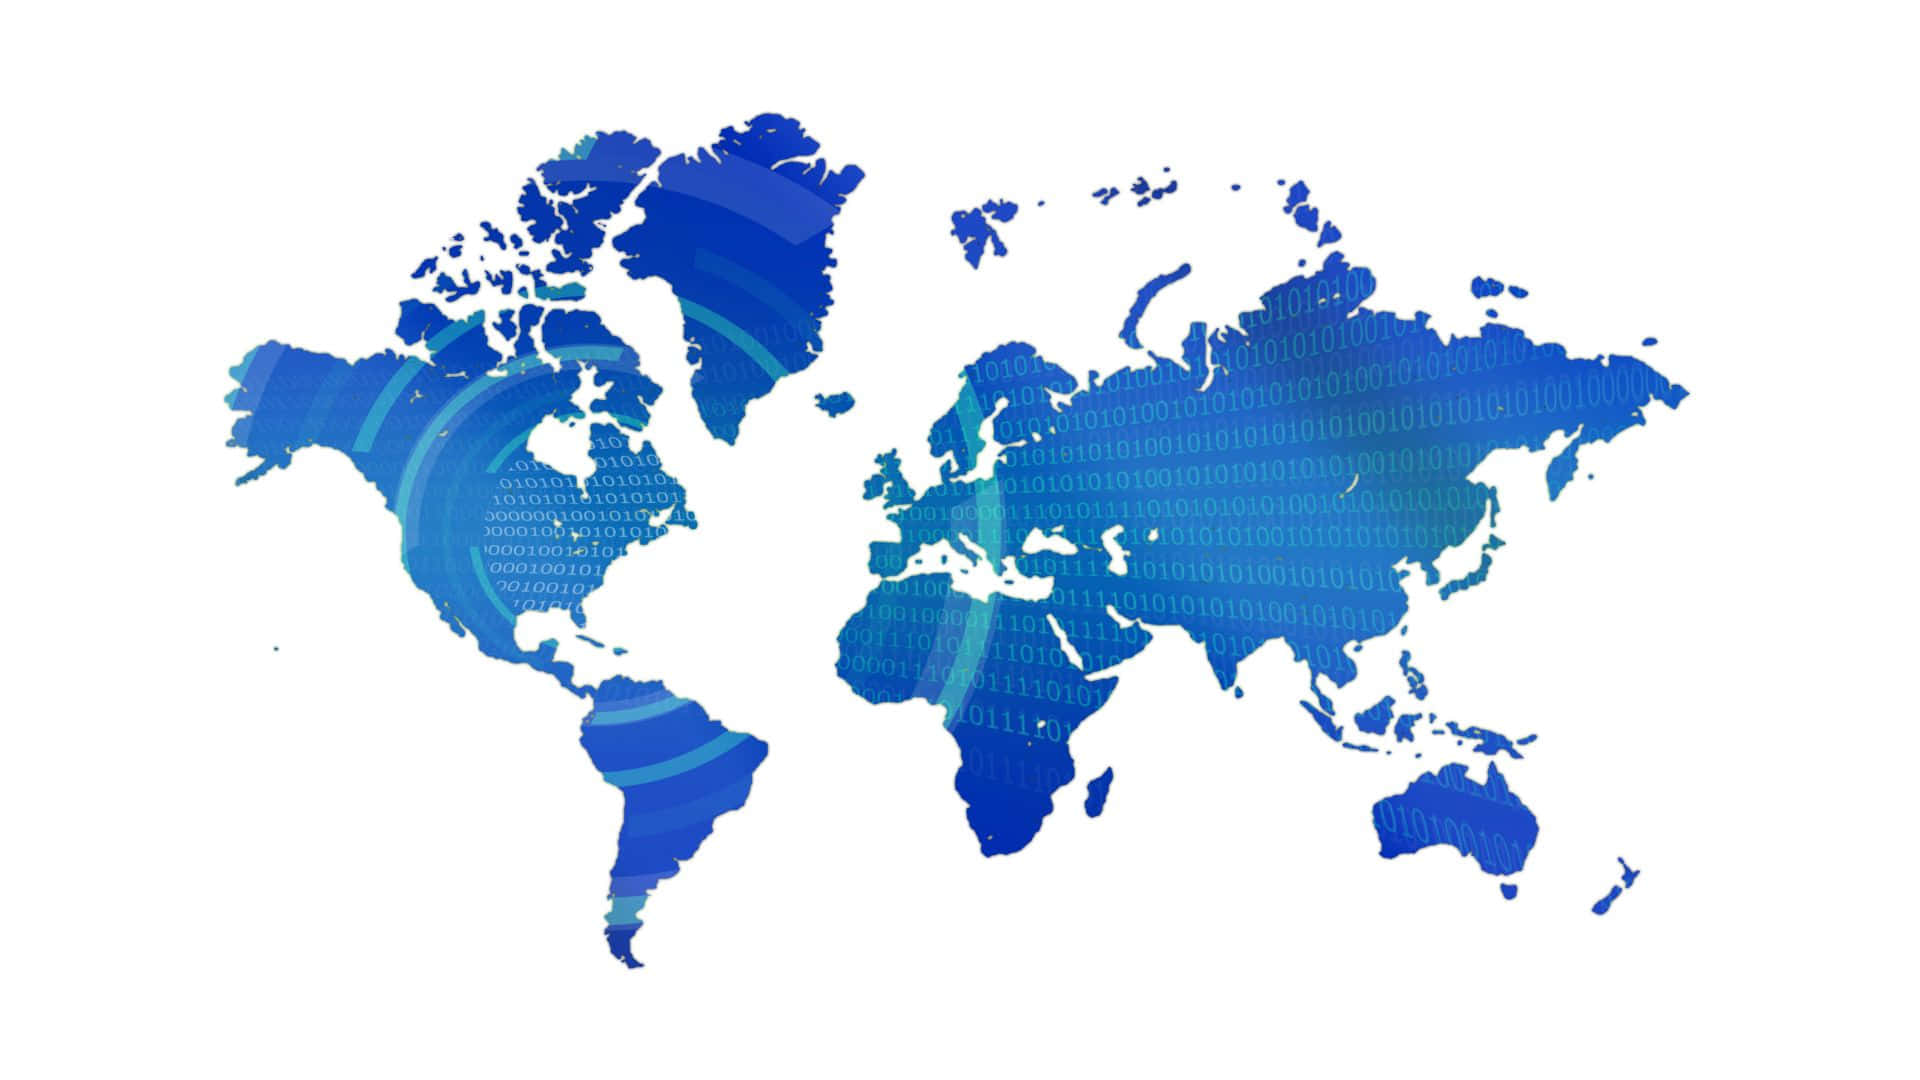 Fondode Pantalla Con Silueta De Mapa Mundial En Tonos Azules Genial.